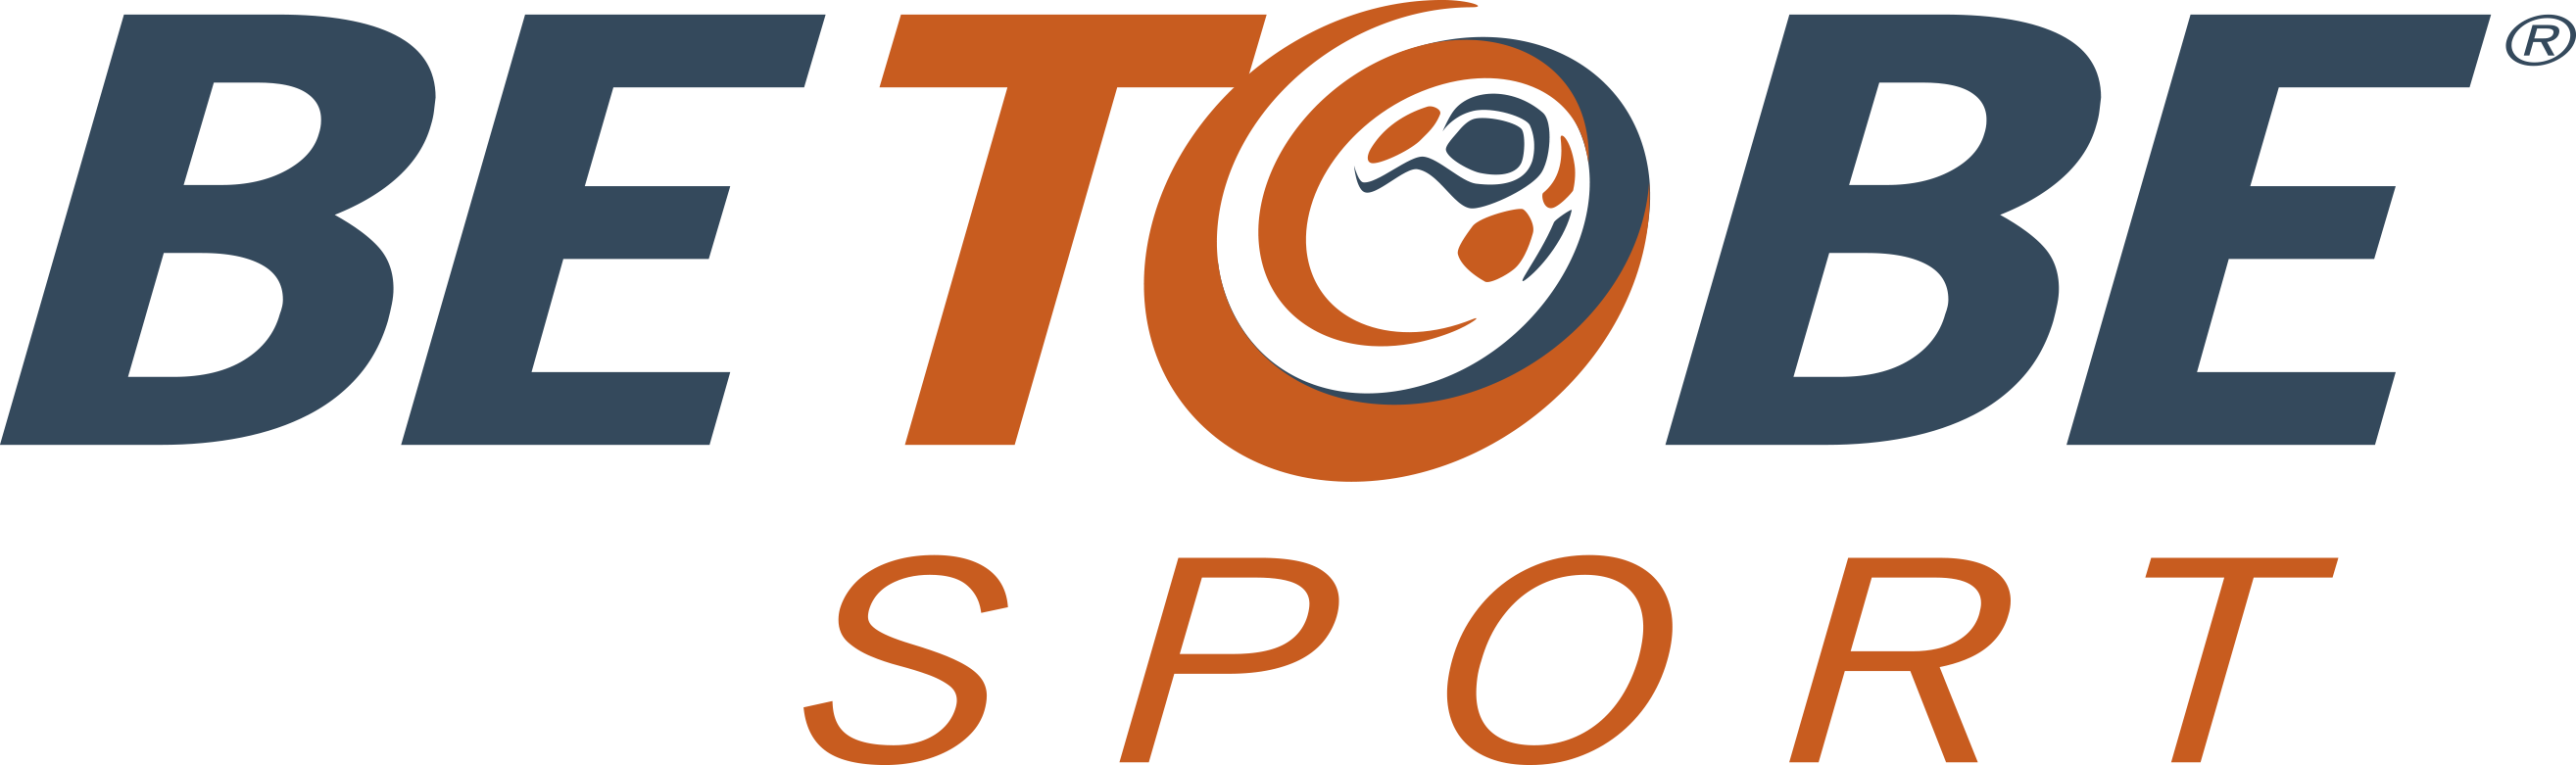 Logo BETOBE-1